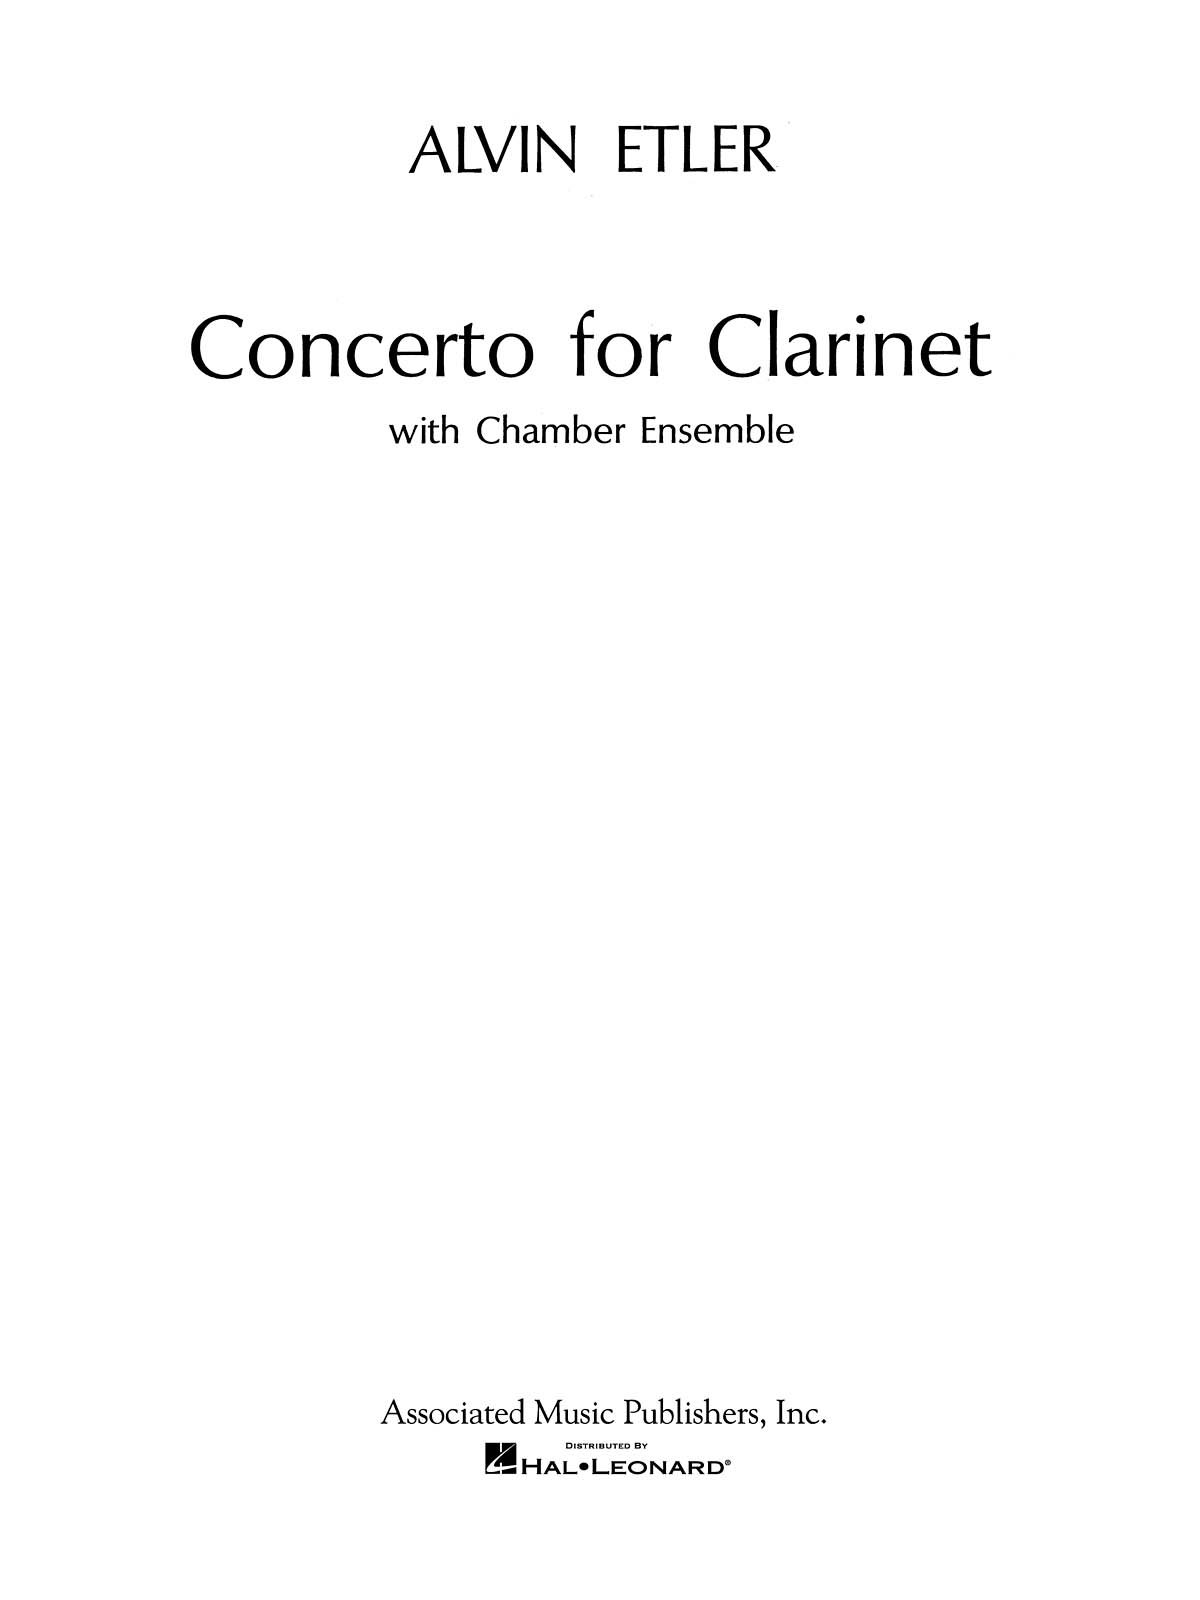 Alvin Etler: Concerto for Clarinet and Chamber Ensemble